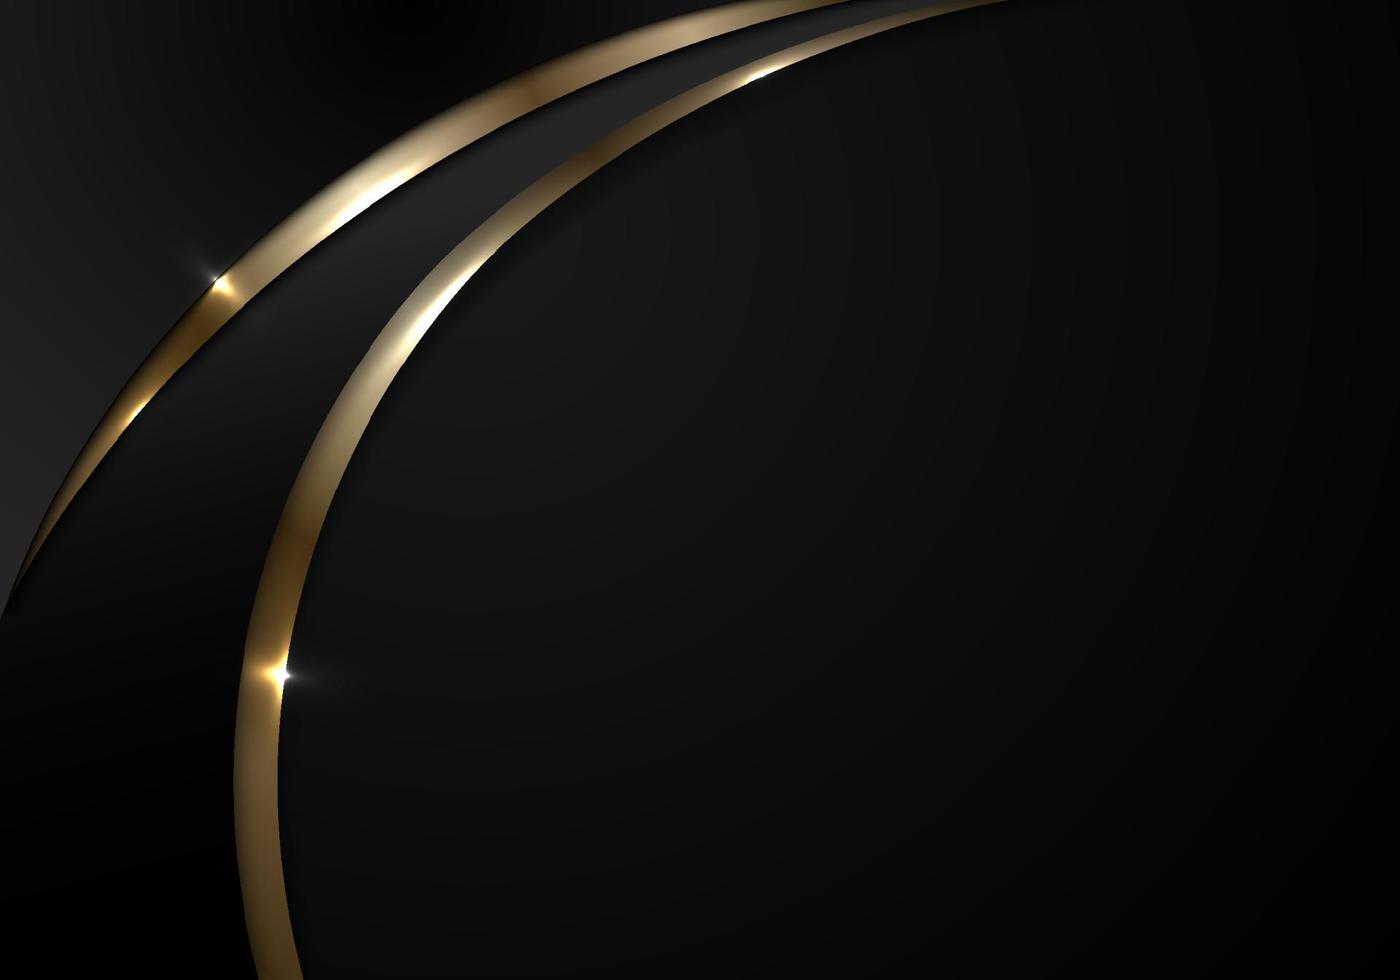 Đường cong đen và vàng - một kết hợp tuyệt đẹp giữa hiện đại và cổ điển, mang lại cho bạn một sự lựa chọn tuyệt vời cho các mẫu thiết kế của mình. Đường cong đen và vàng tạo ra sự đồng bộ giữa các yếu tố, đồng thời tạo nên sự độc đáo và nổi bật.